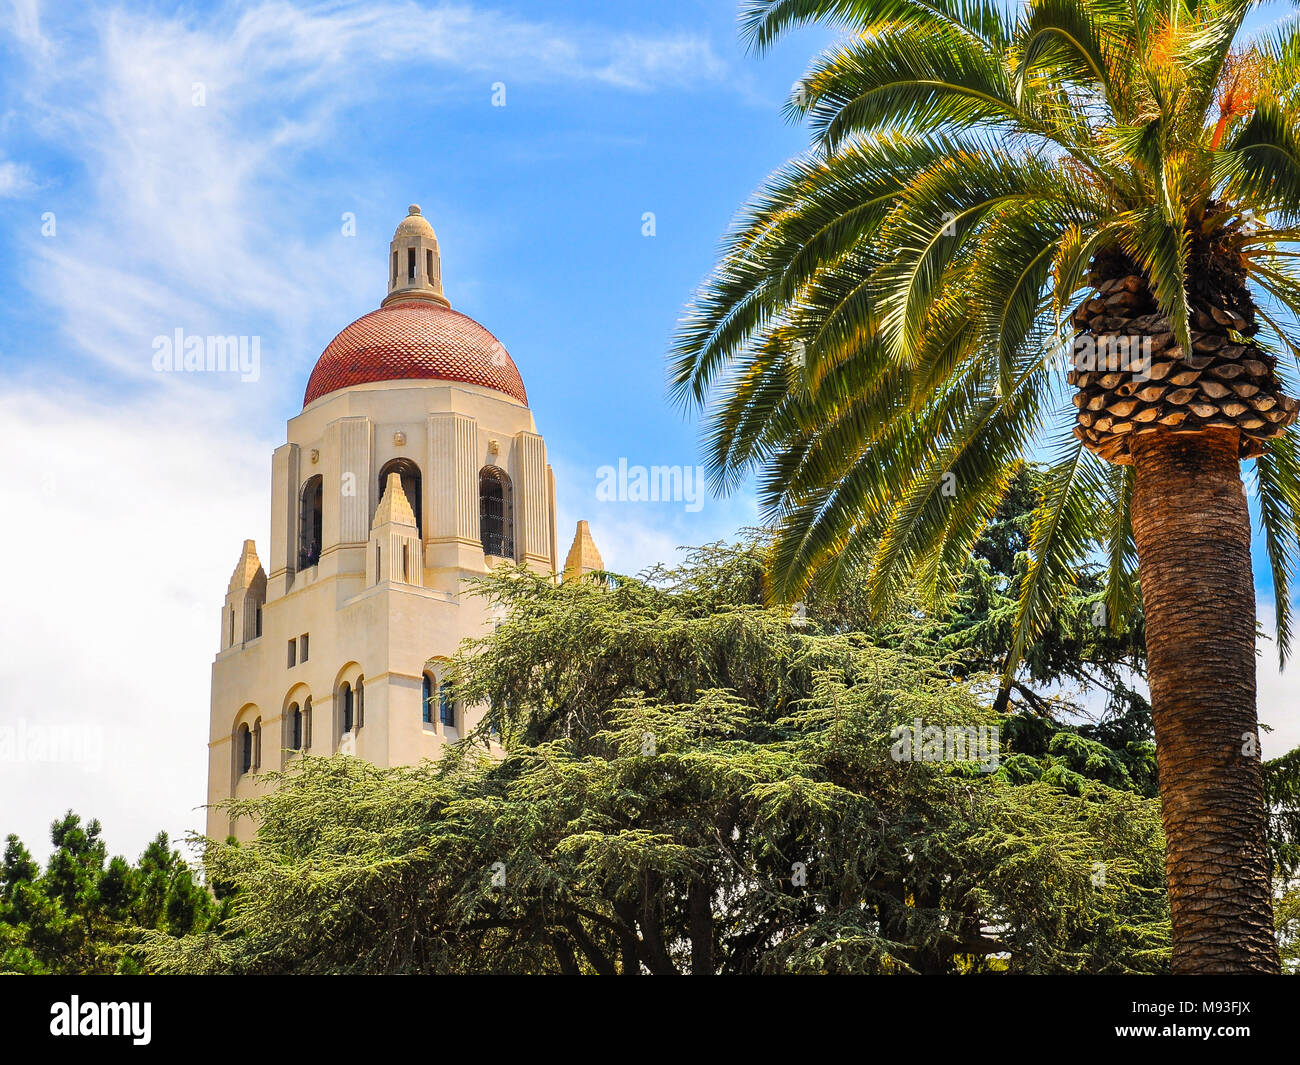 Hoover Tower - Campus de l'Université Stanford, Palo Alto, Californie Banque D'Images